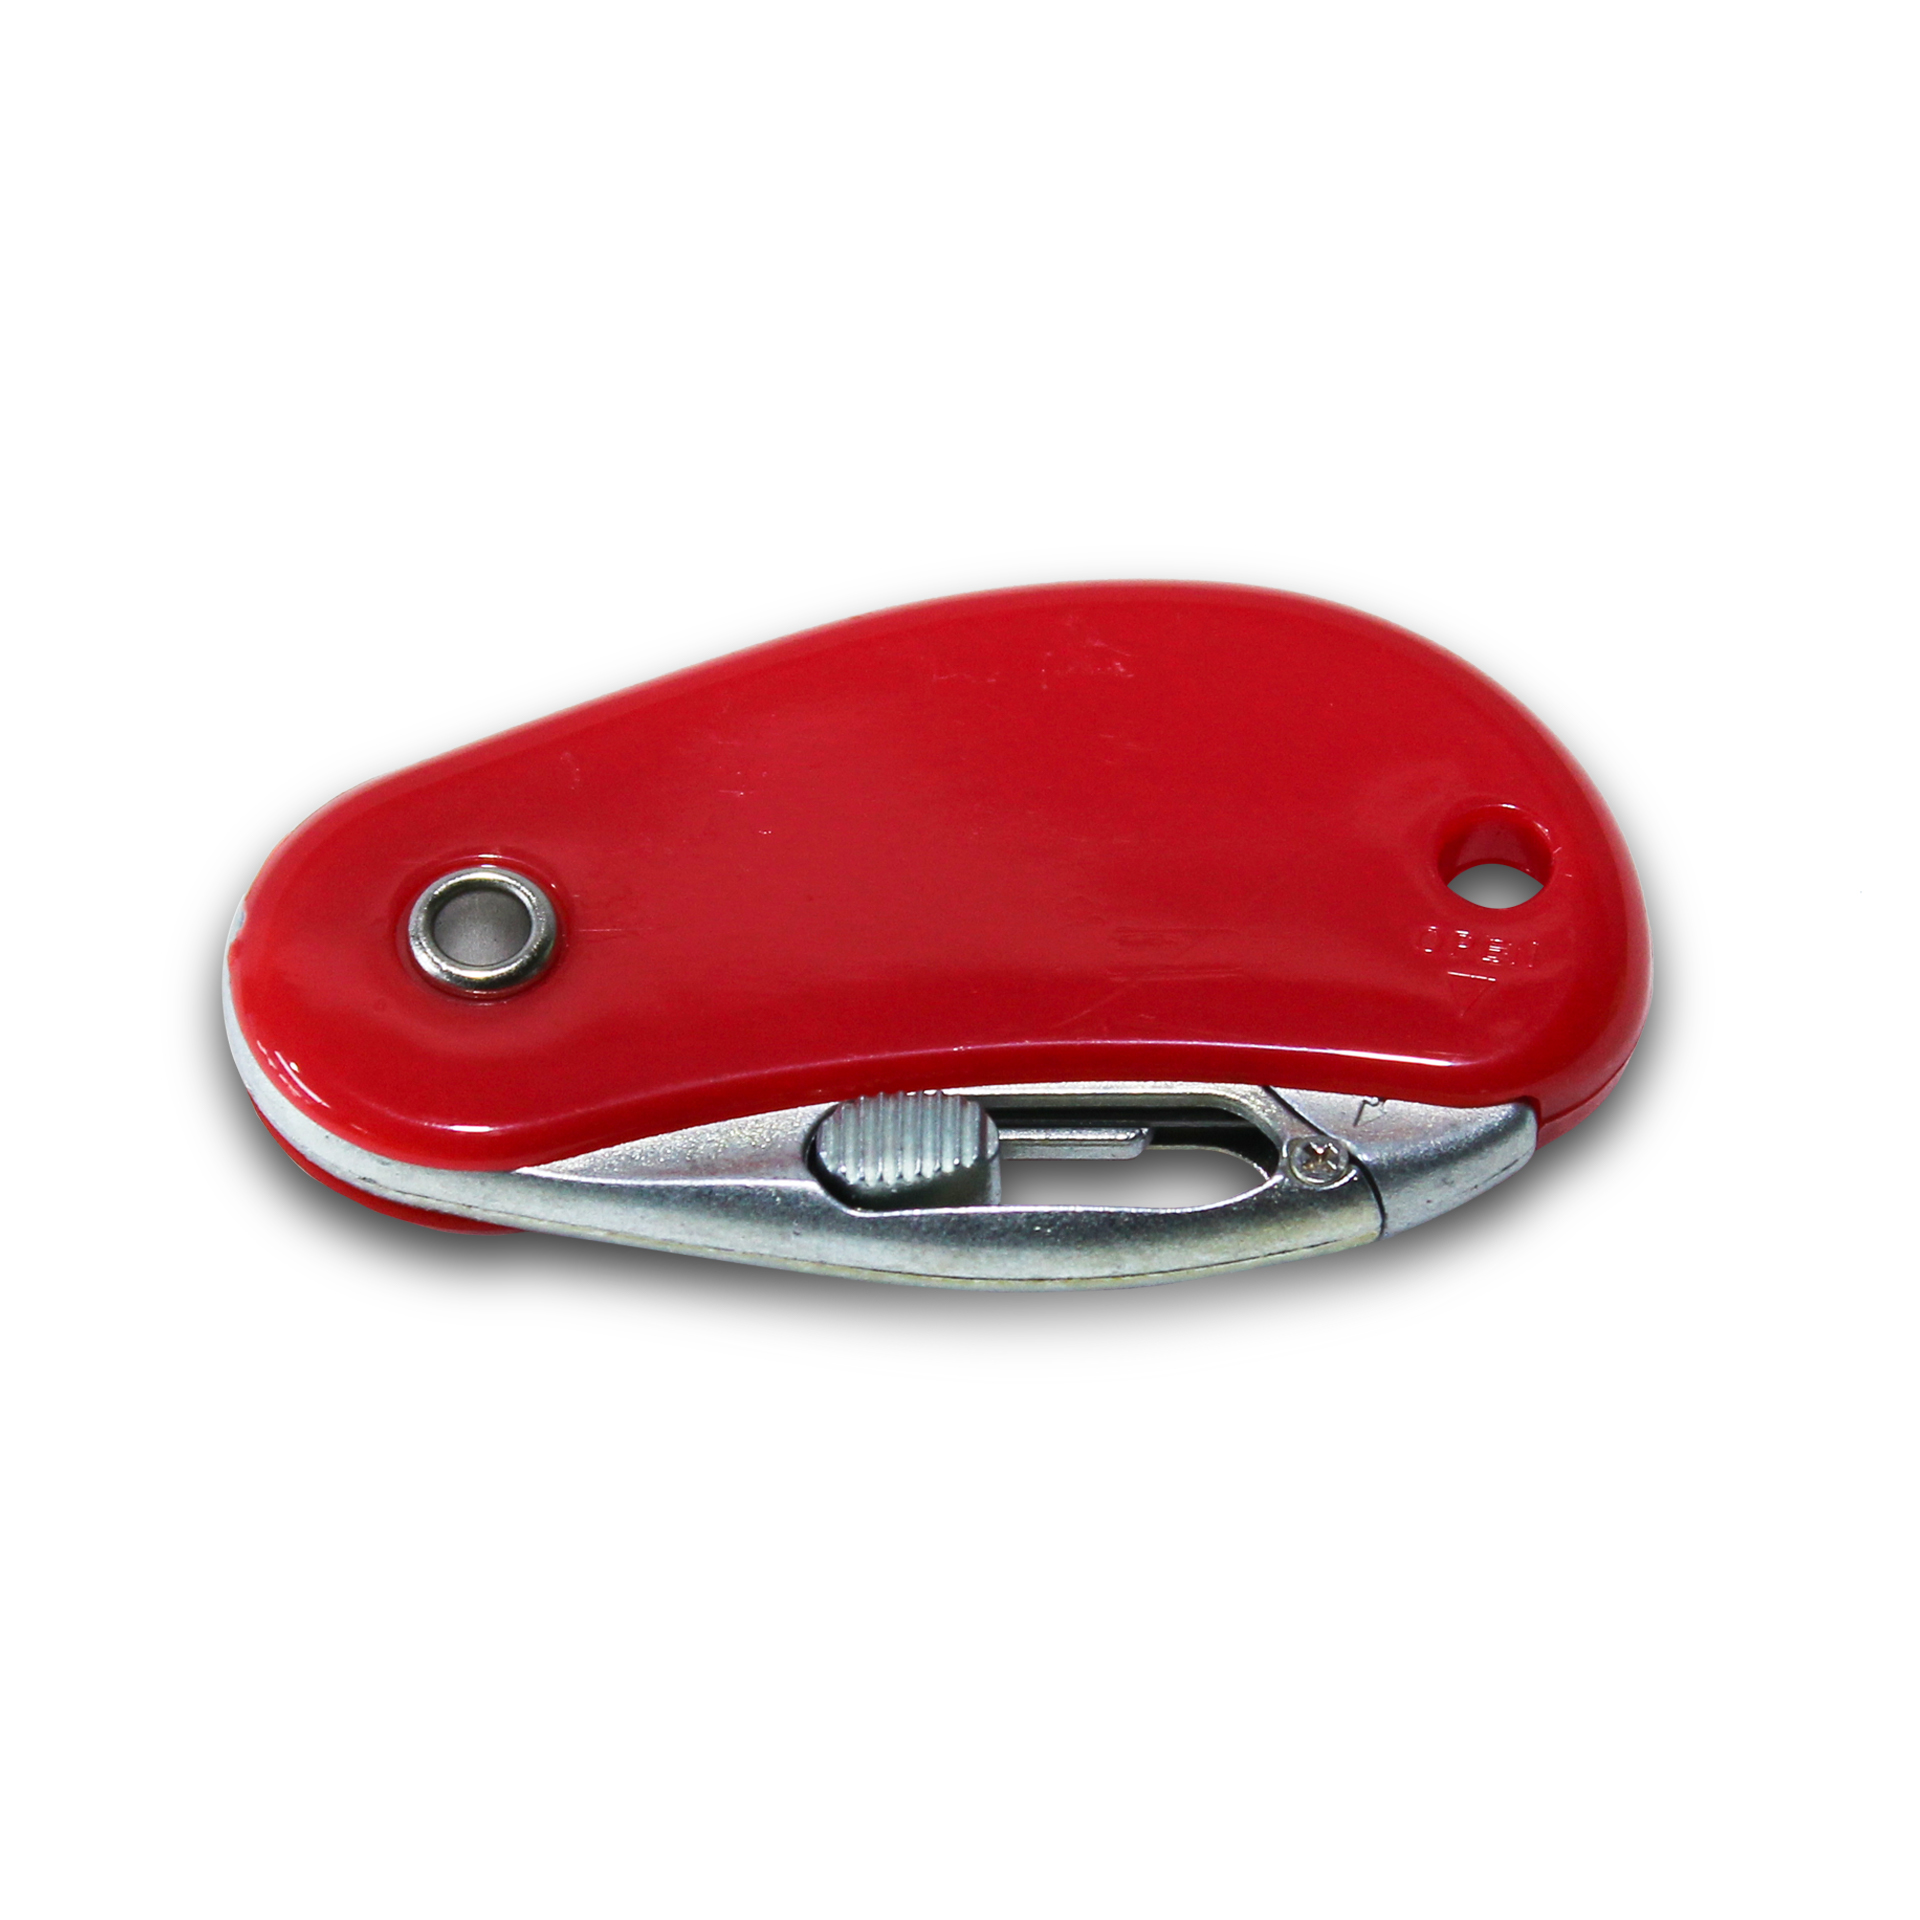 คัตเตอร์นิรภัยอเนกประสงค์แบบพกพา PSC2 Pocket Safety Cutter สีแดง